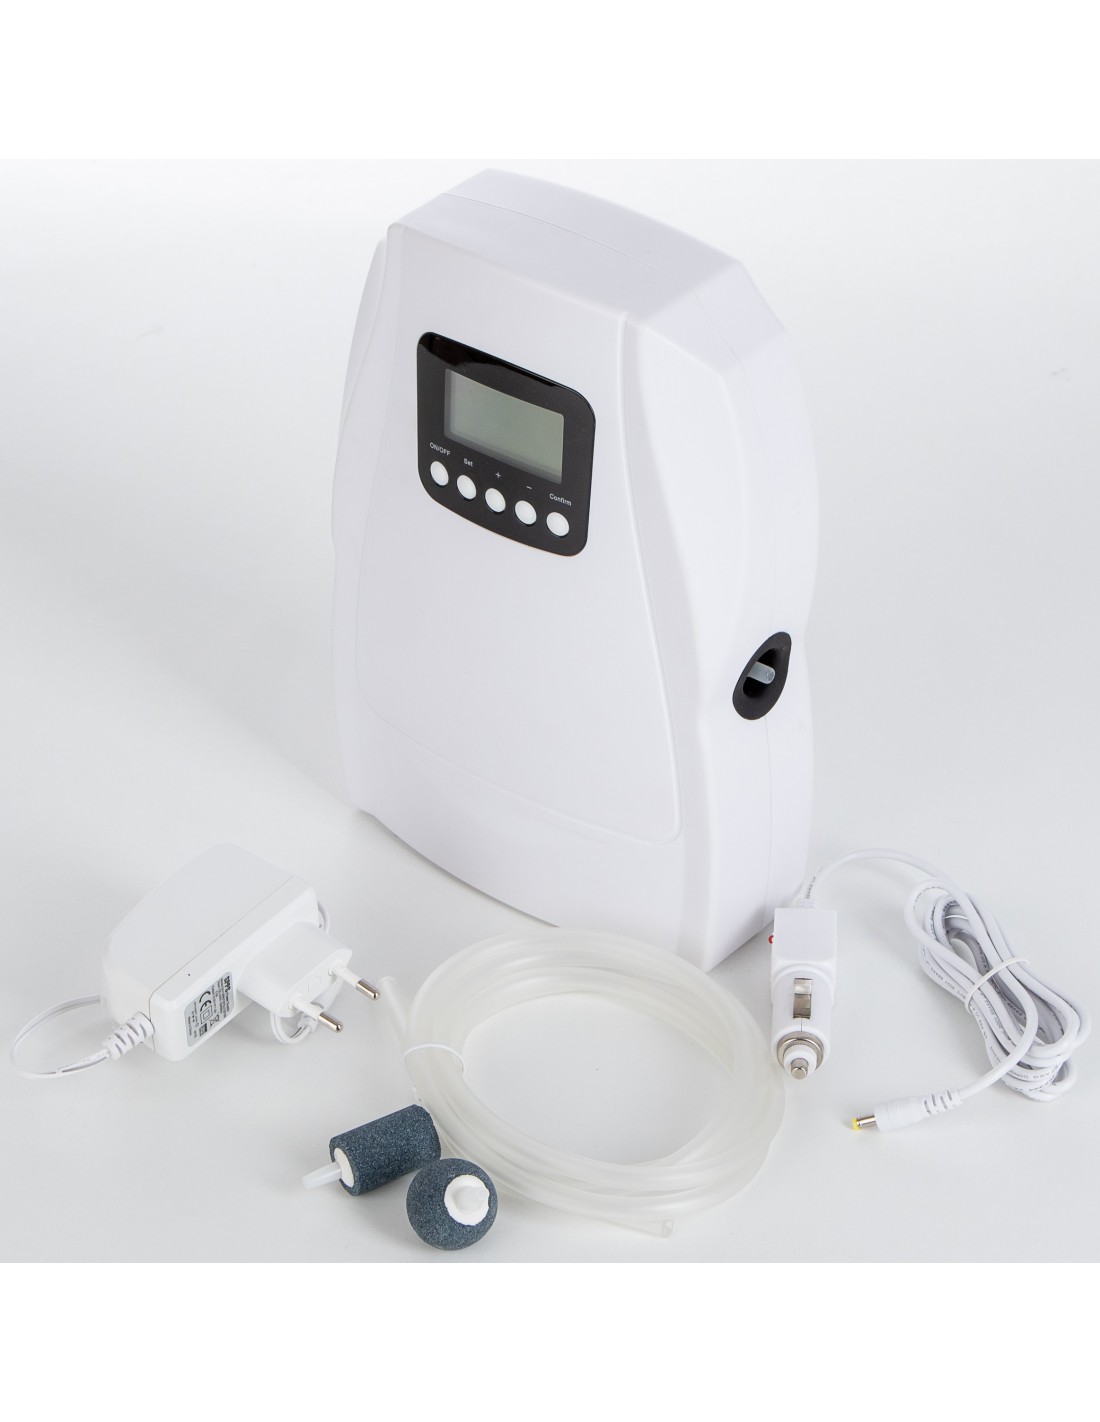 Ozonizador de agua – Vidox – Equipos generadores de Ozono médico